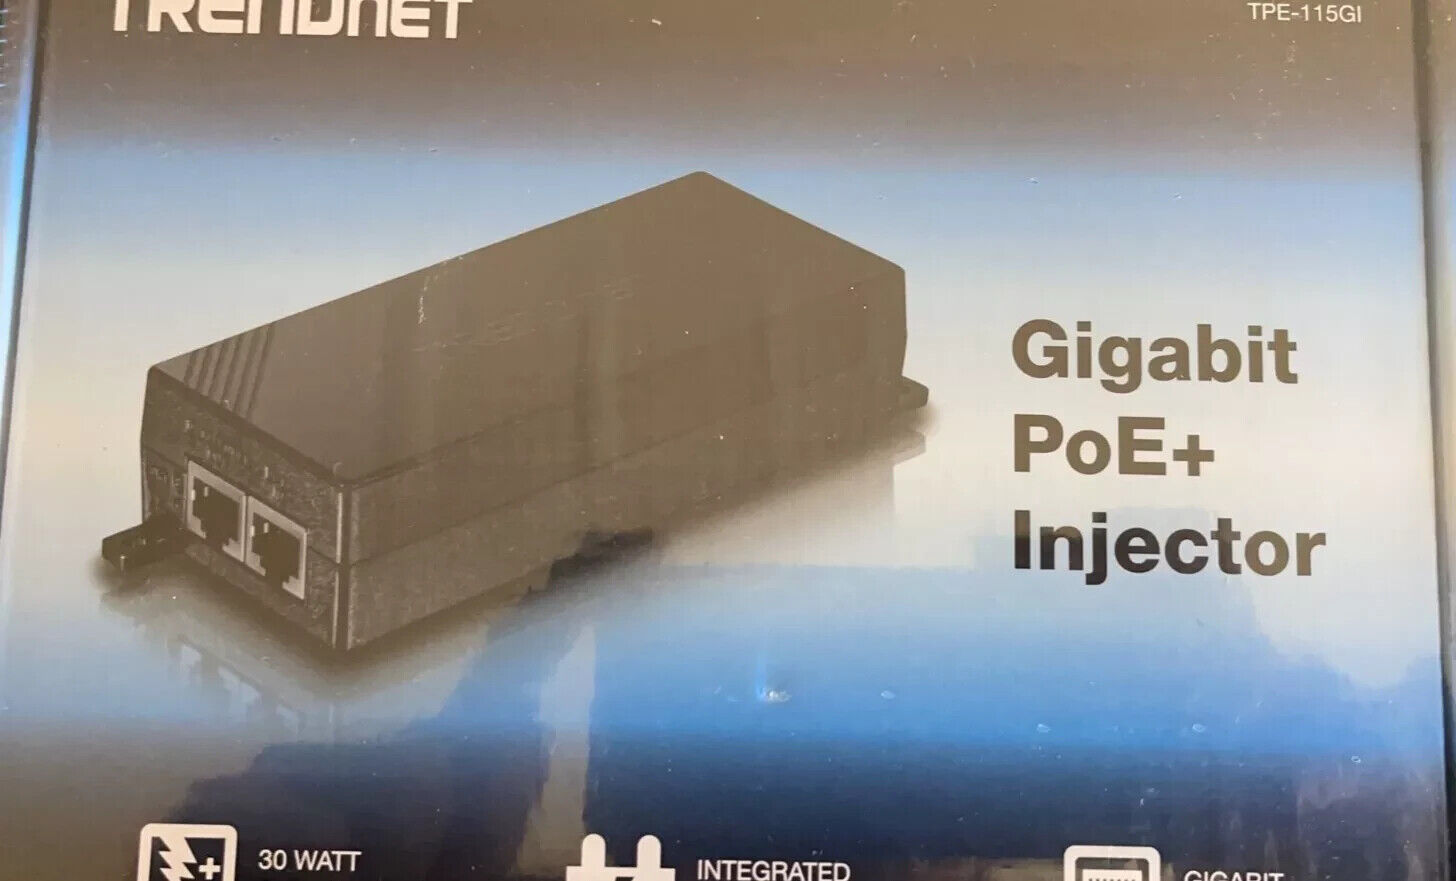 TRENDnet Gigabit PoE+ Injector TPE-115GI (LOT OF 3) Sealed.